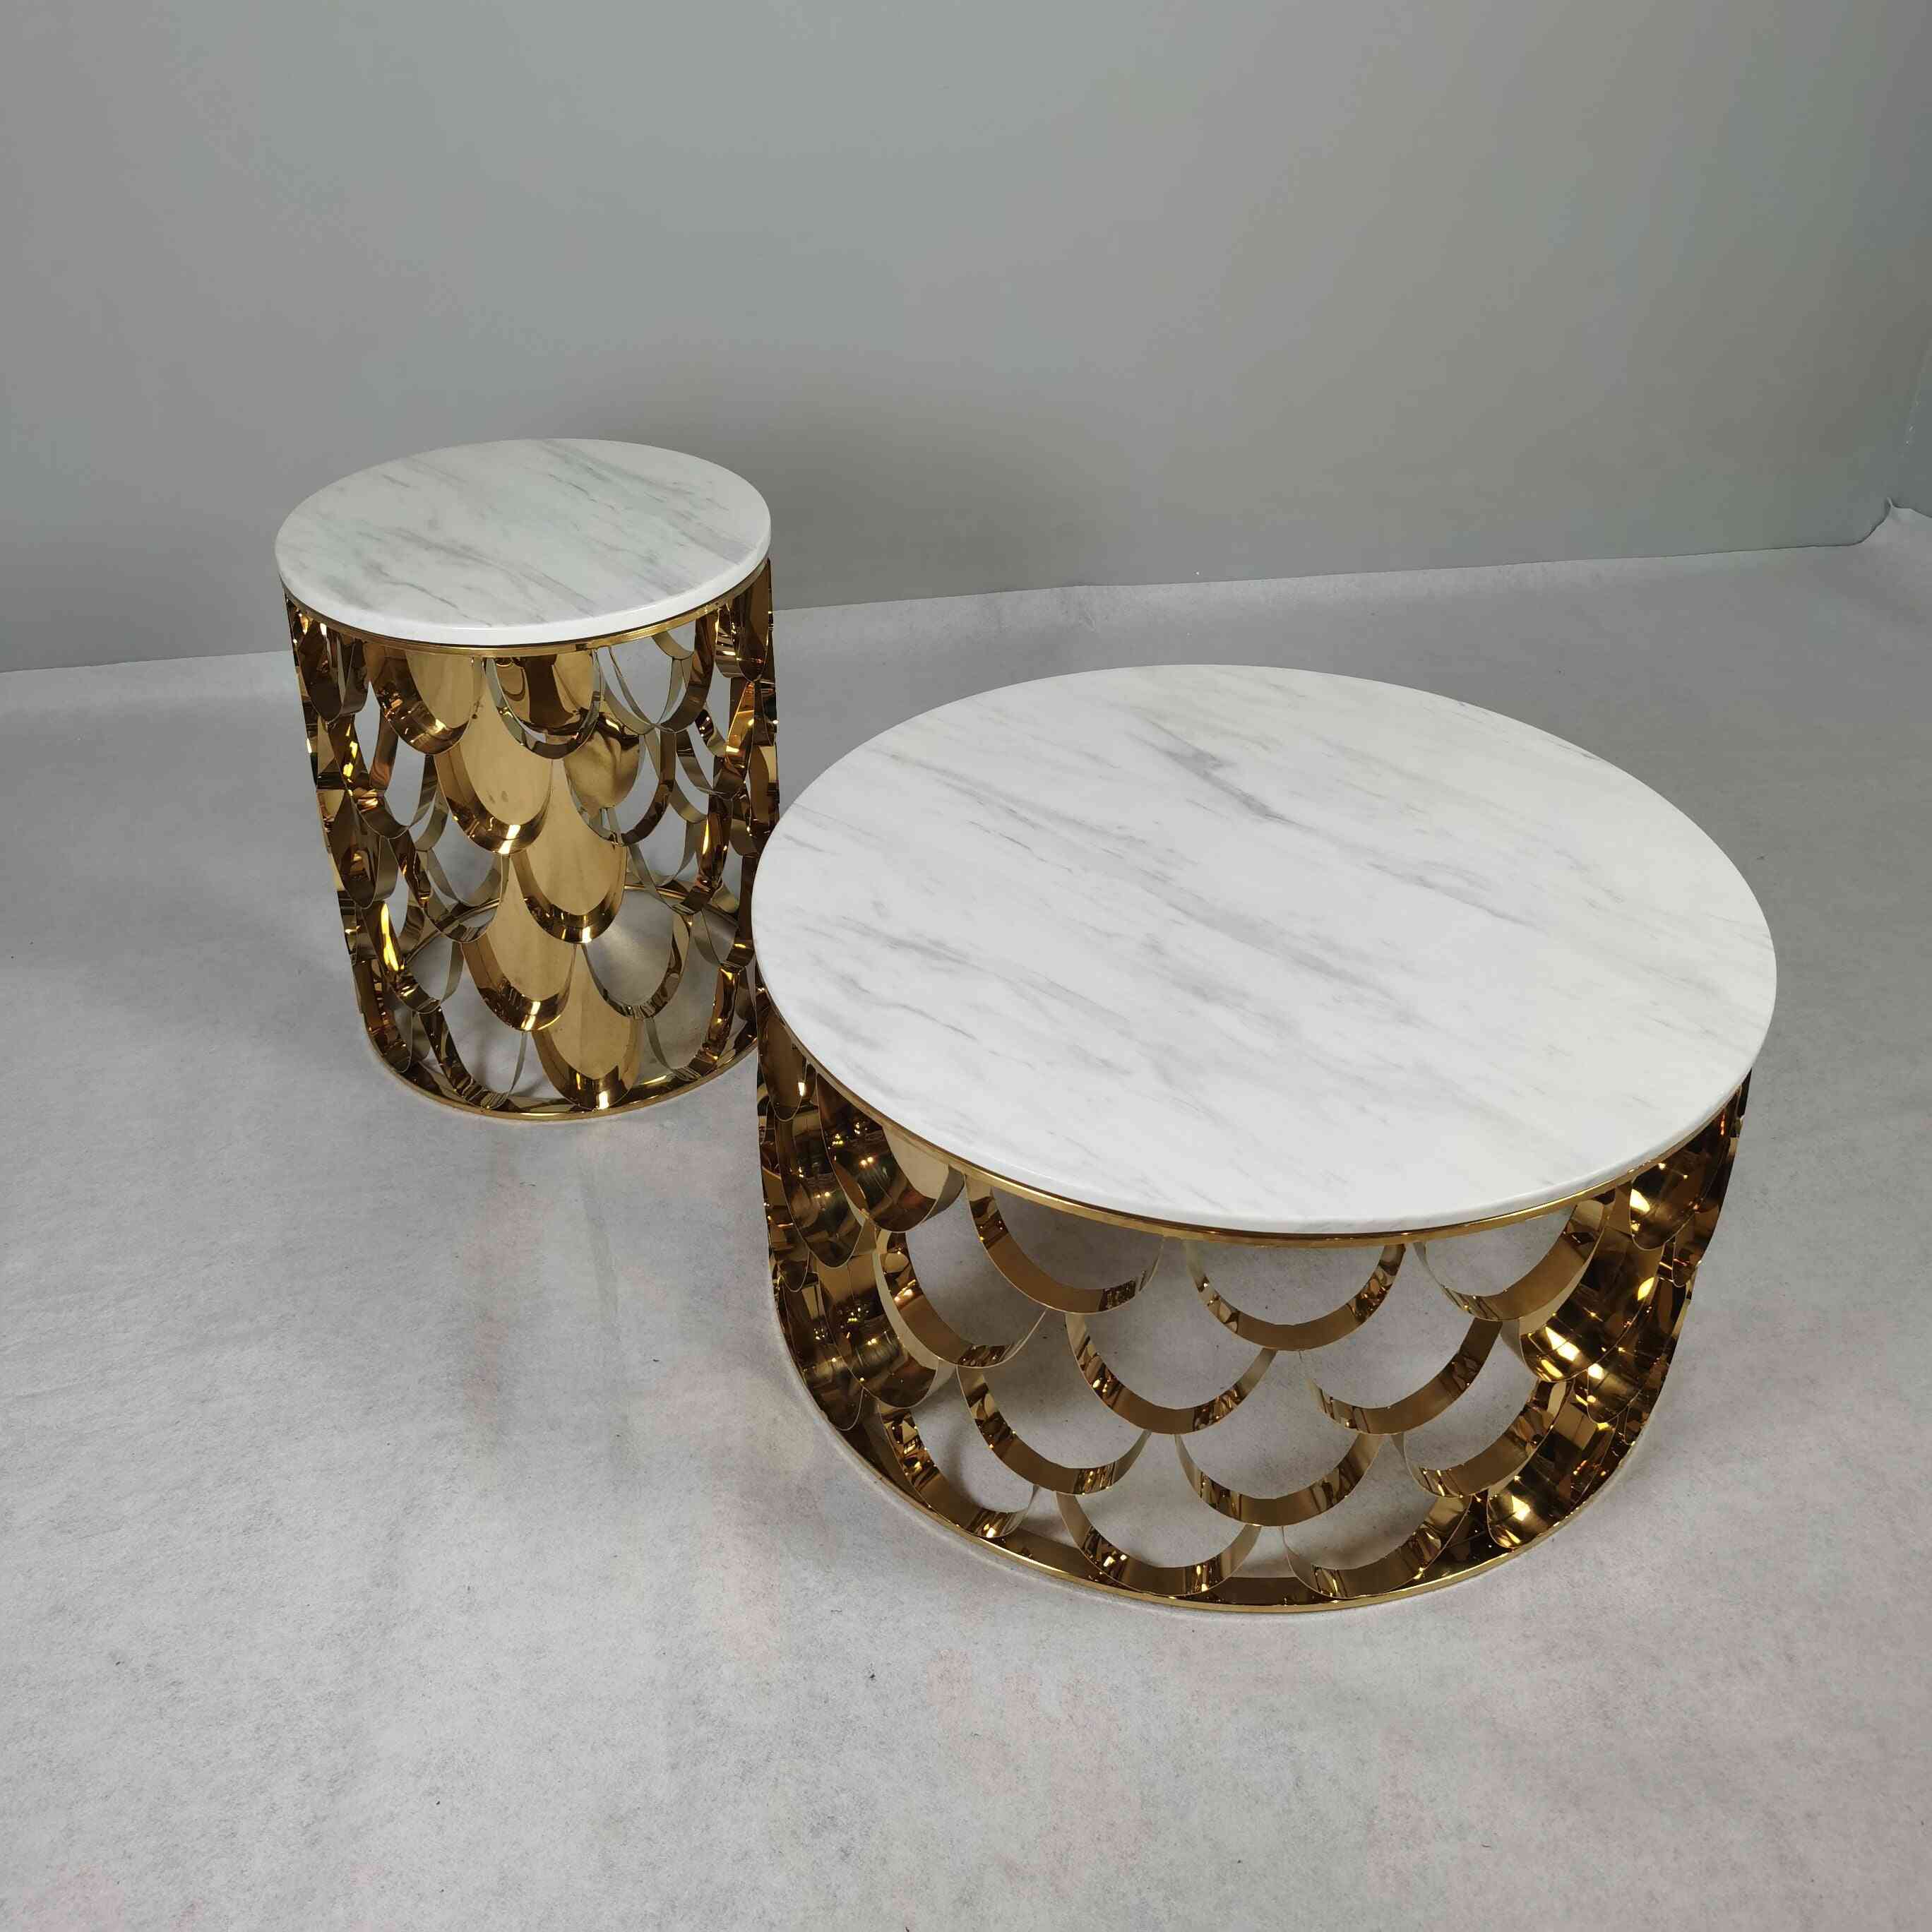 Moderní lehká luxusní mramorová/skleněná deska stolu z nerezové oceli